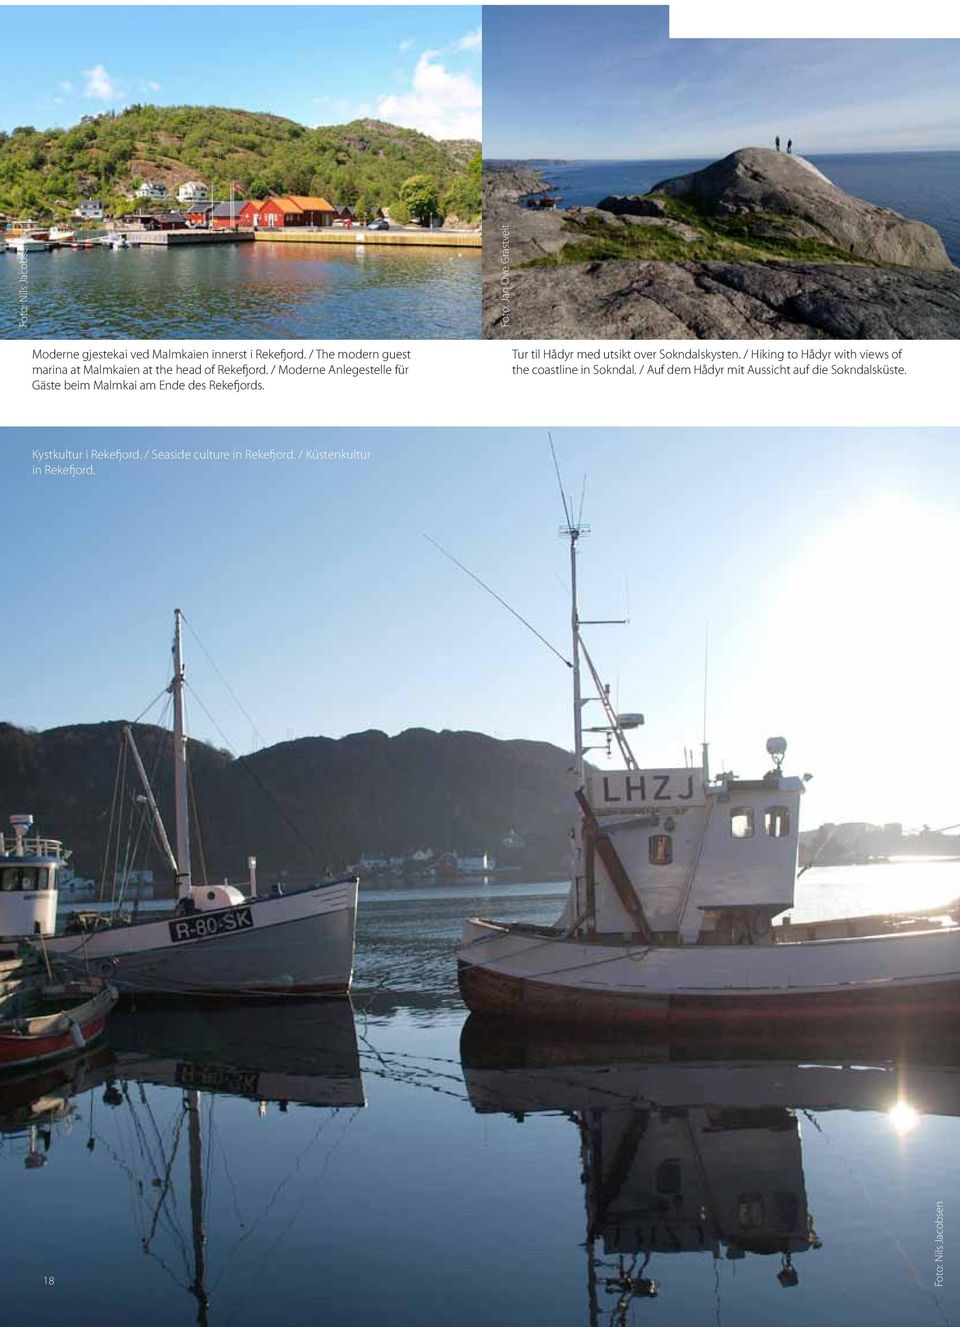 / Moderne Anlegestelle für Gäste beim Malmkai am Ende des Rekefjords. Tur til Hådyr med utsikt over Sokndalskysten.